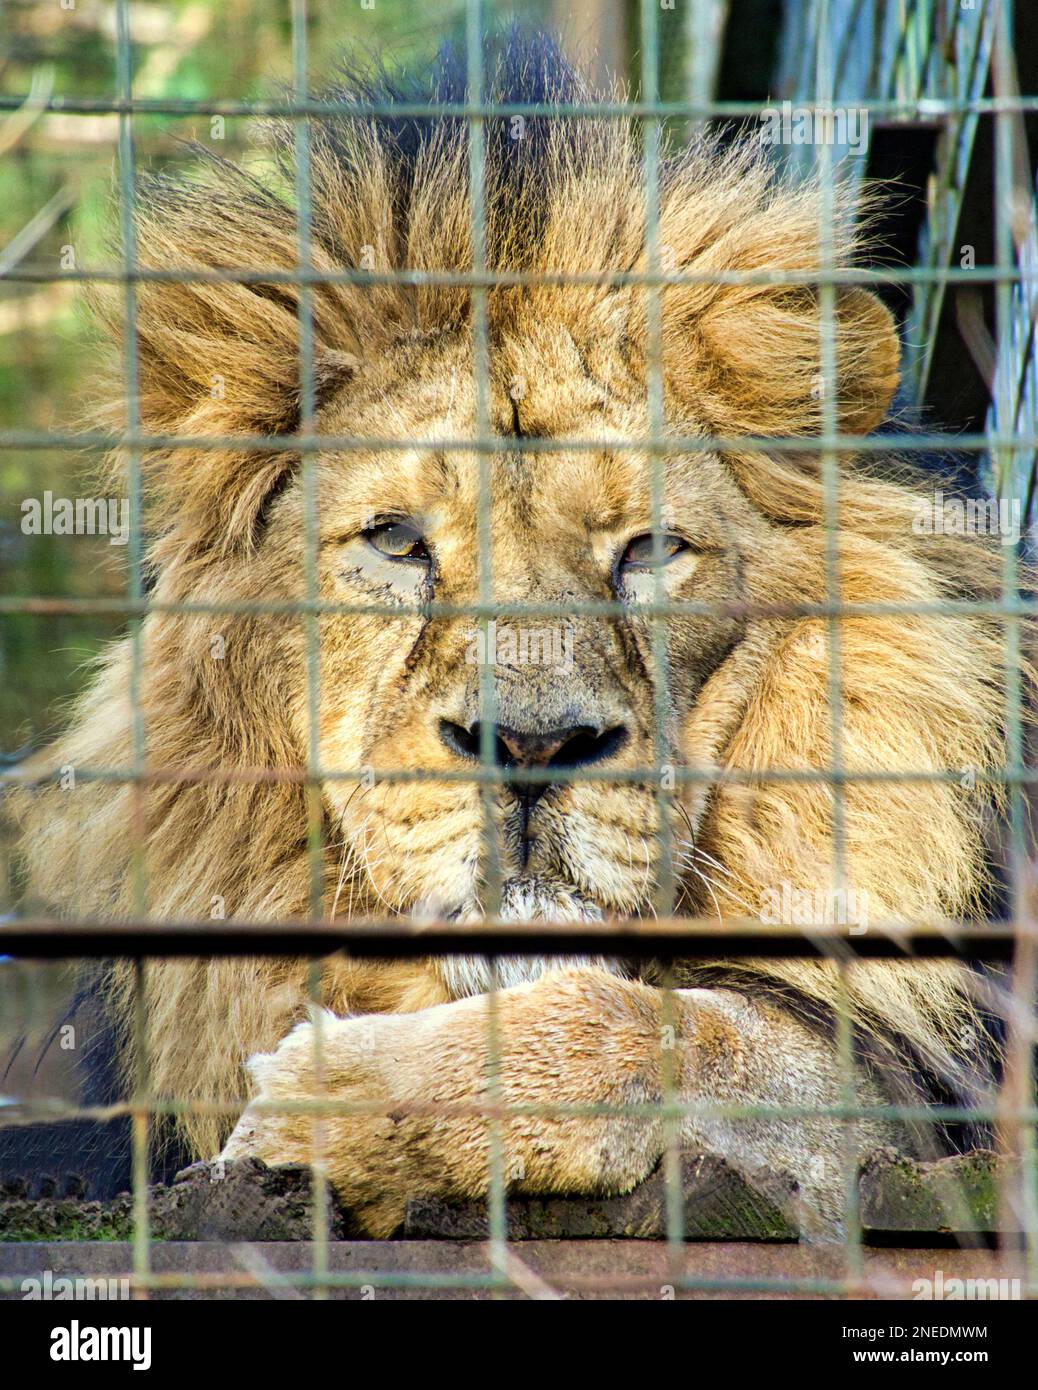 unhappy edinburgh zoo lion Stock Photo